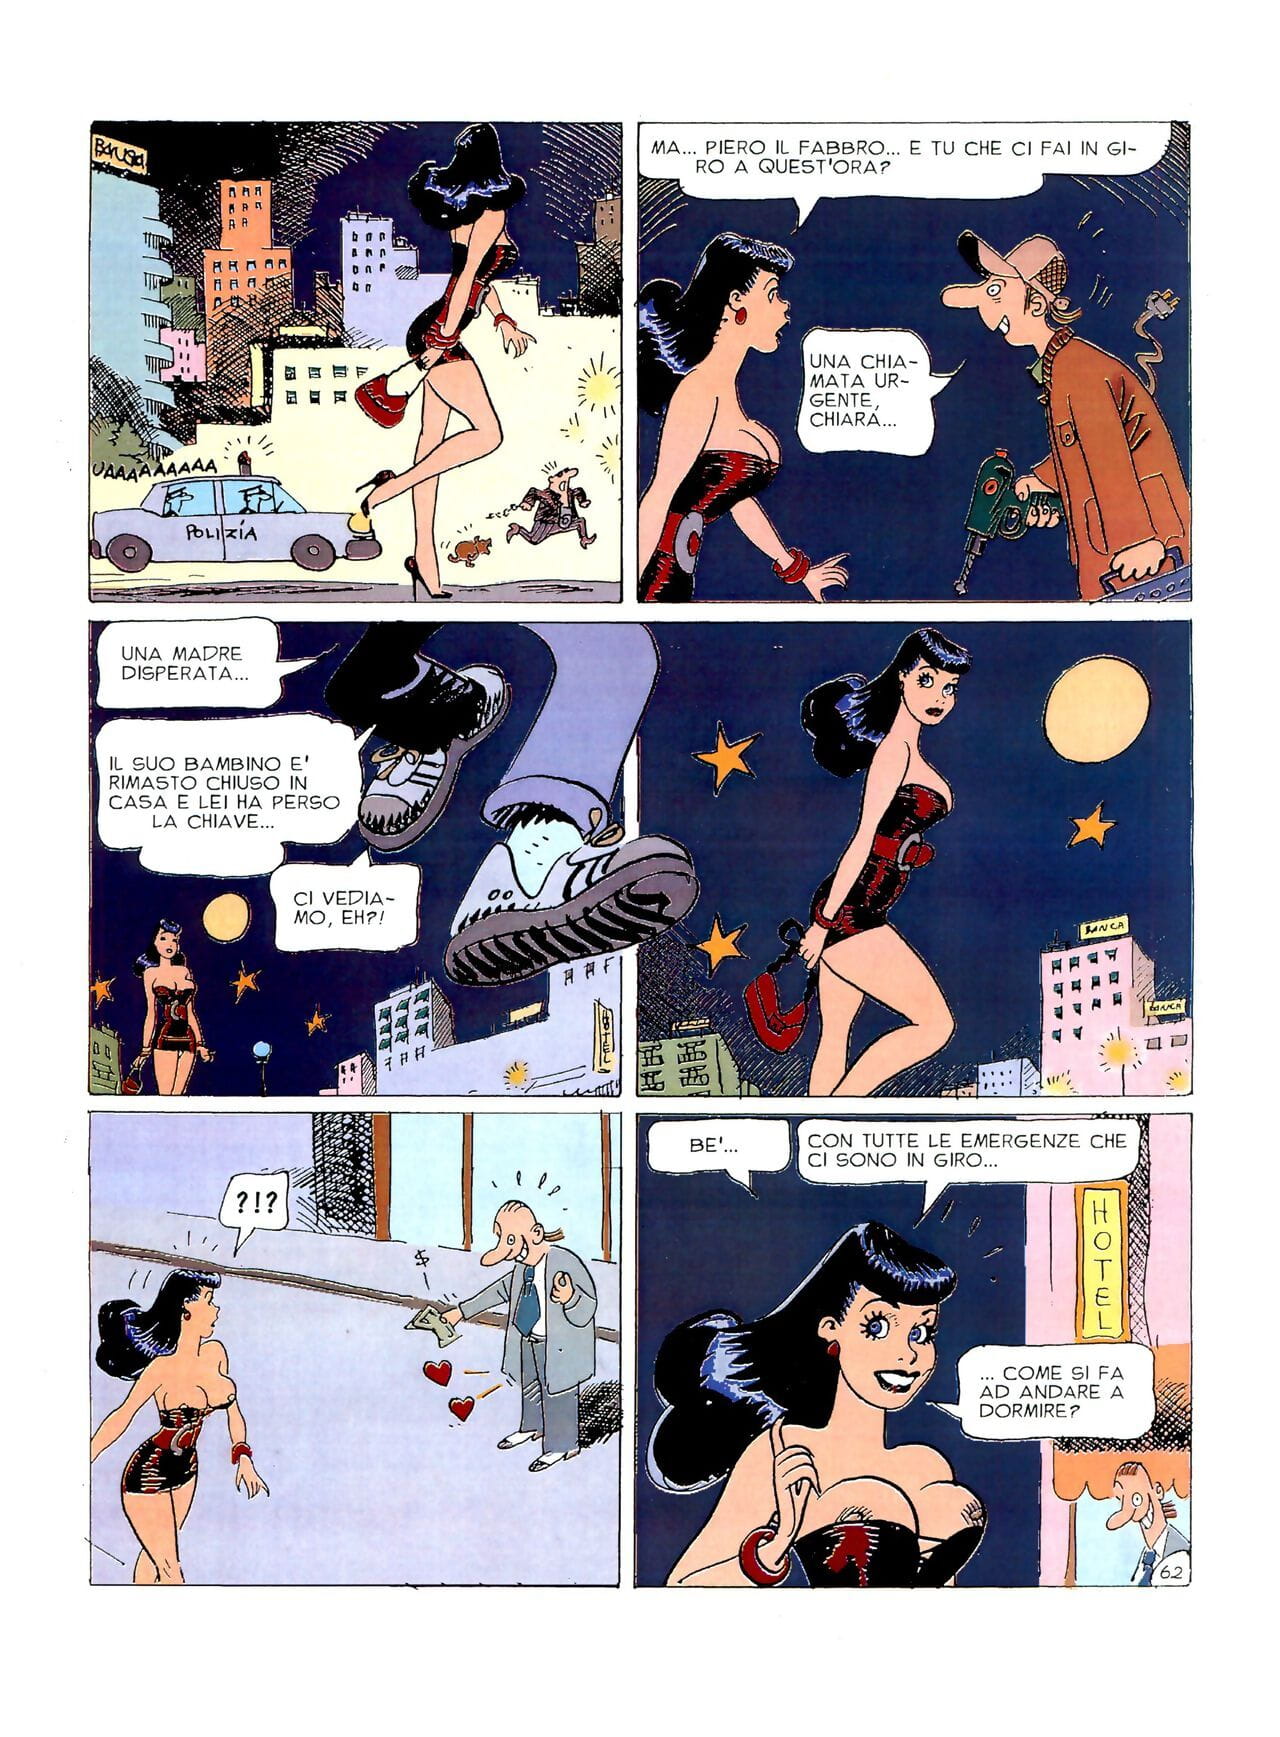 chiara Di notte #1 Teil 3 page 1